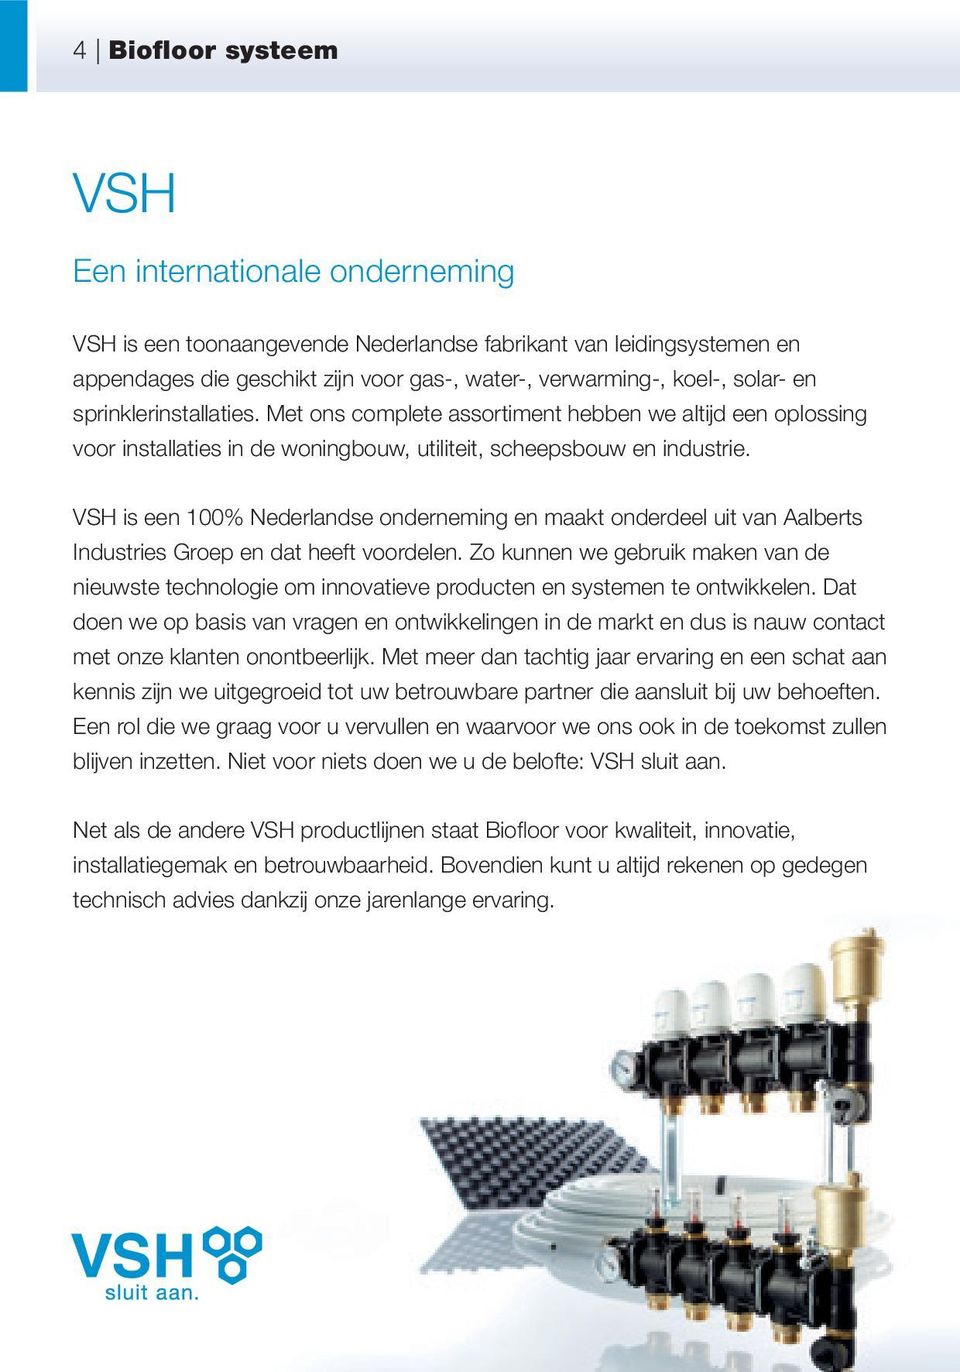 VSH is een 100% Nederlandse onderneming en maakt onderdeel uit van Aalberts Industries Groep en dat heeft voordelen.